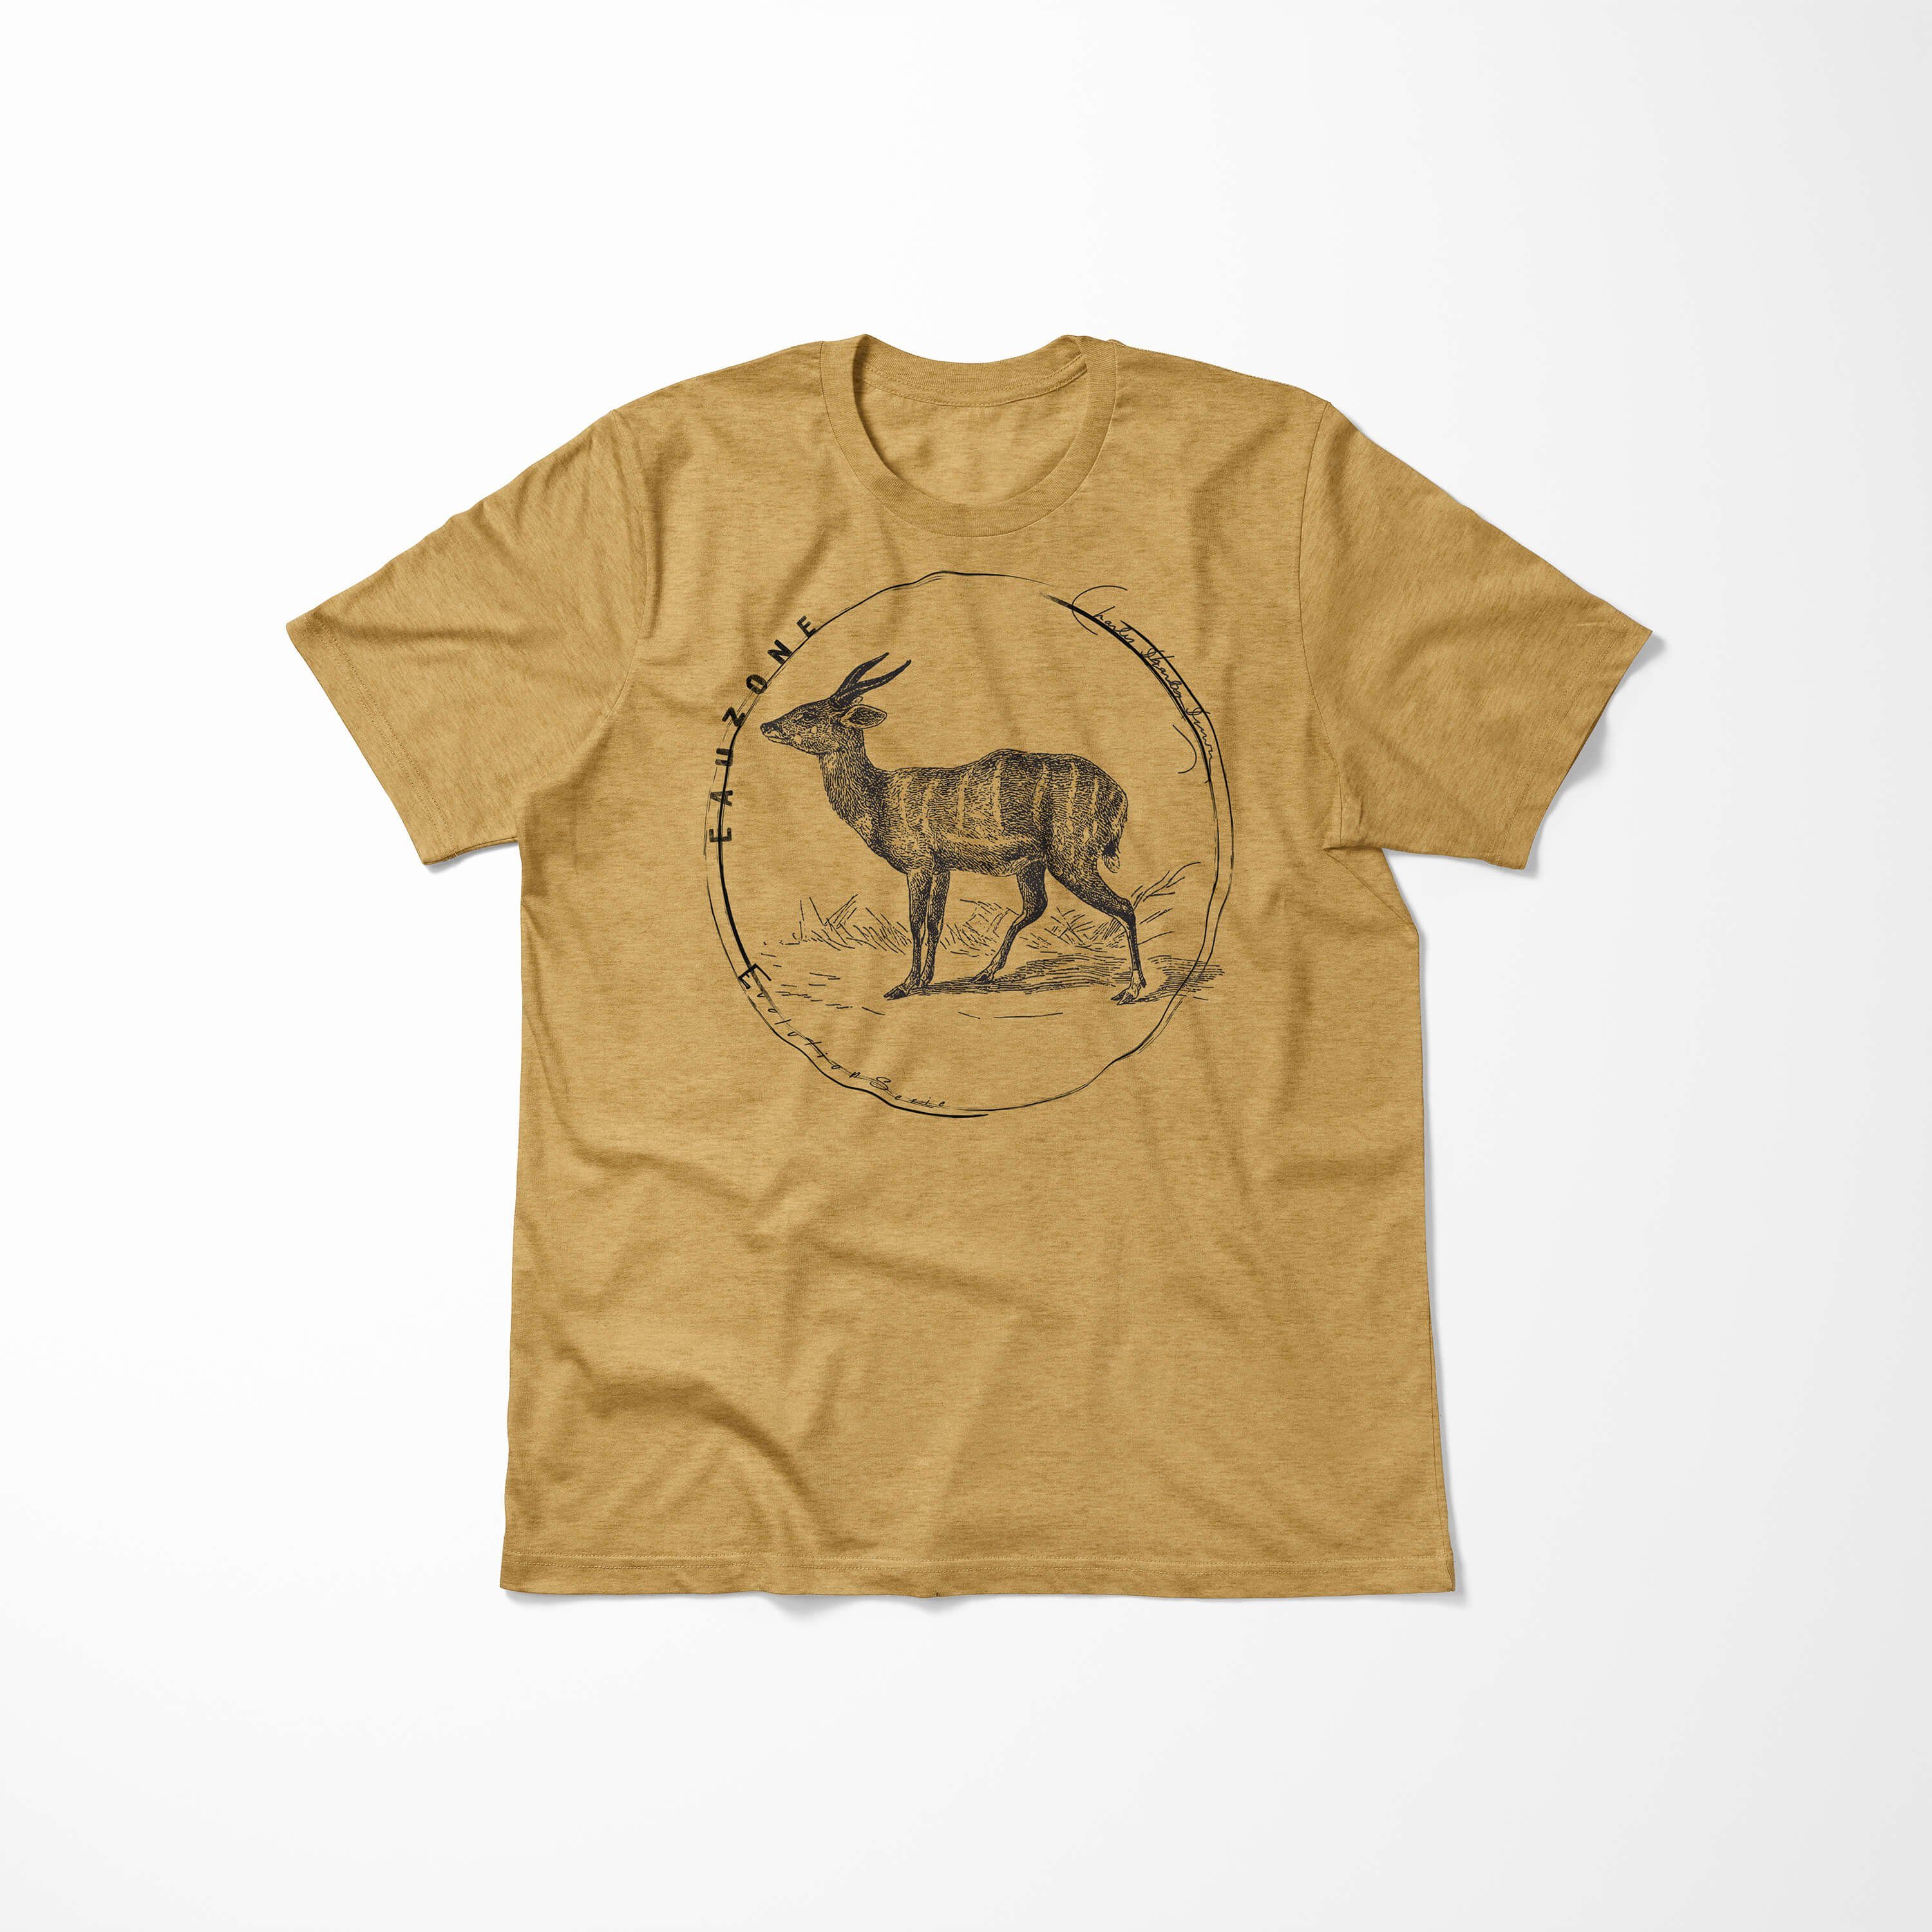 Gold Antique Sinus Evolution Antilope T-Shirt Art Herren T-Shirt